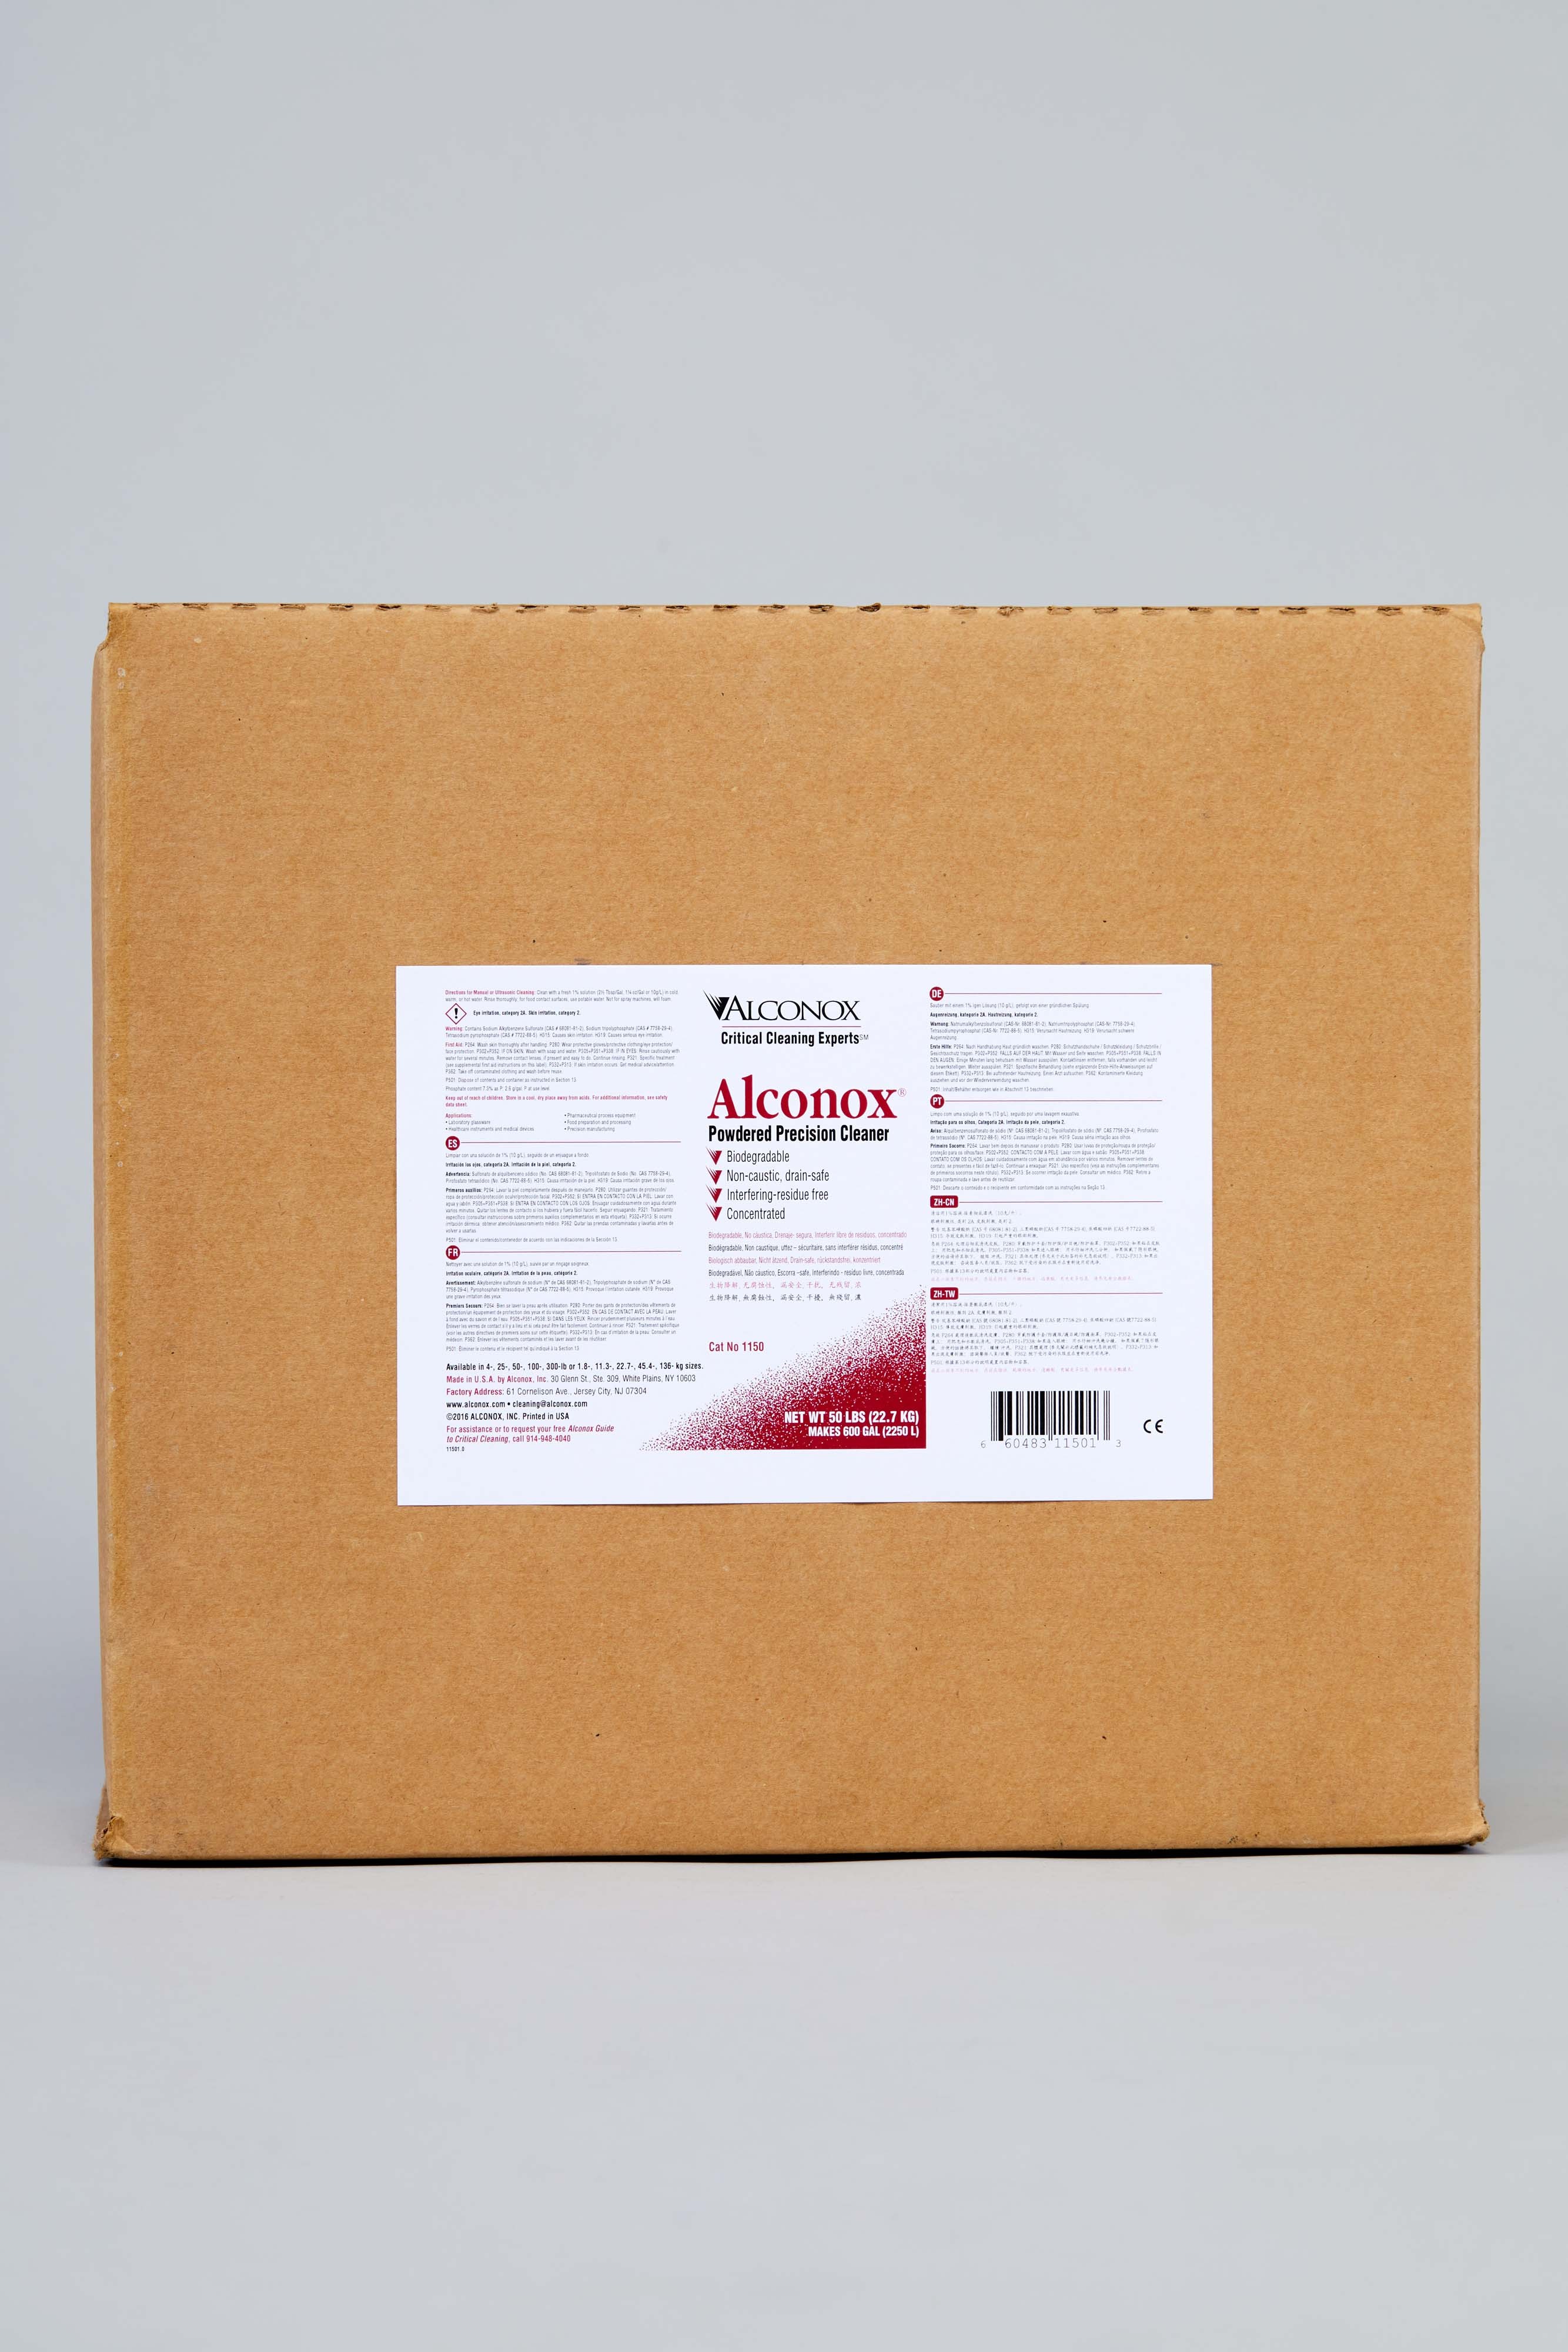 Alconox Powdered Precision Cleaner - 50 lb.